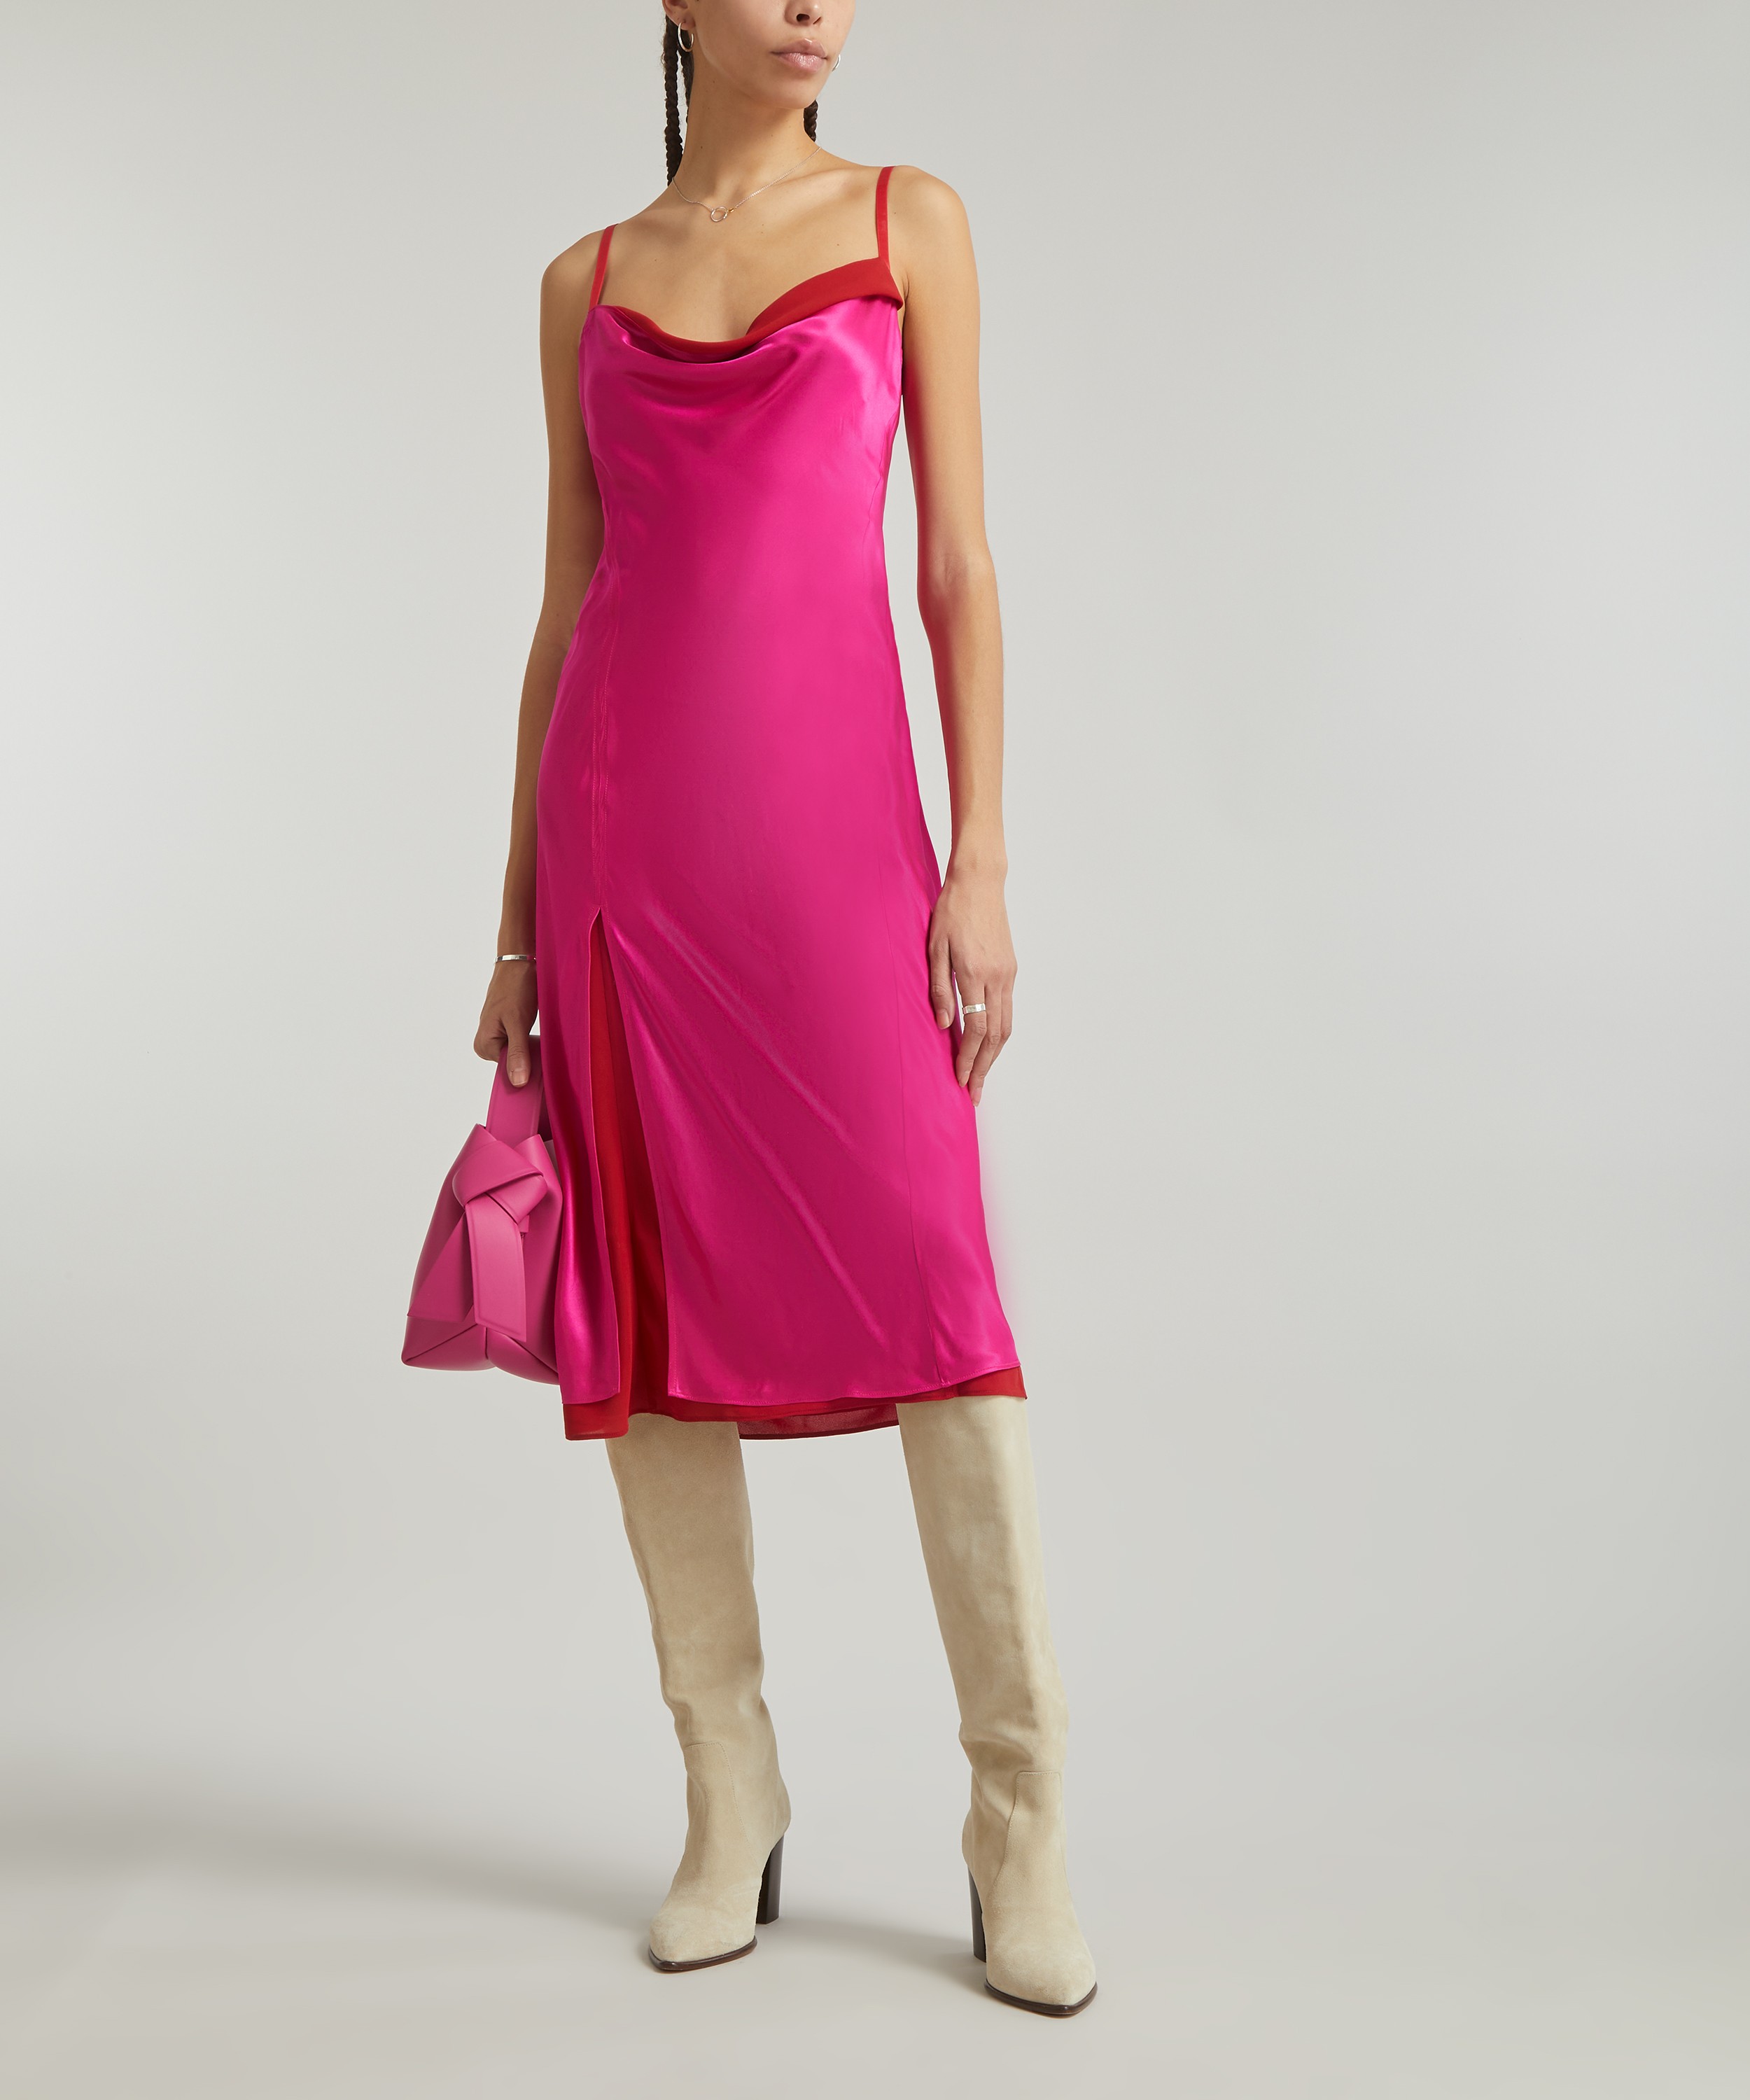 Coda Slip Dress in Satin Pink